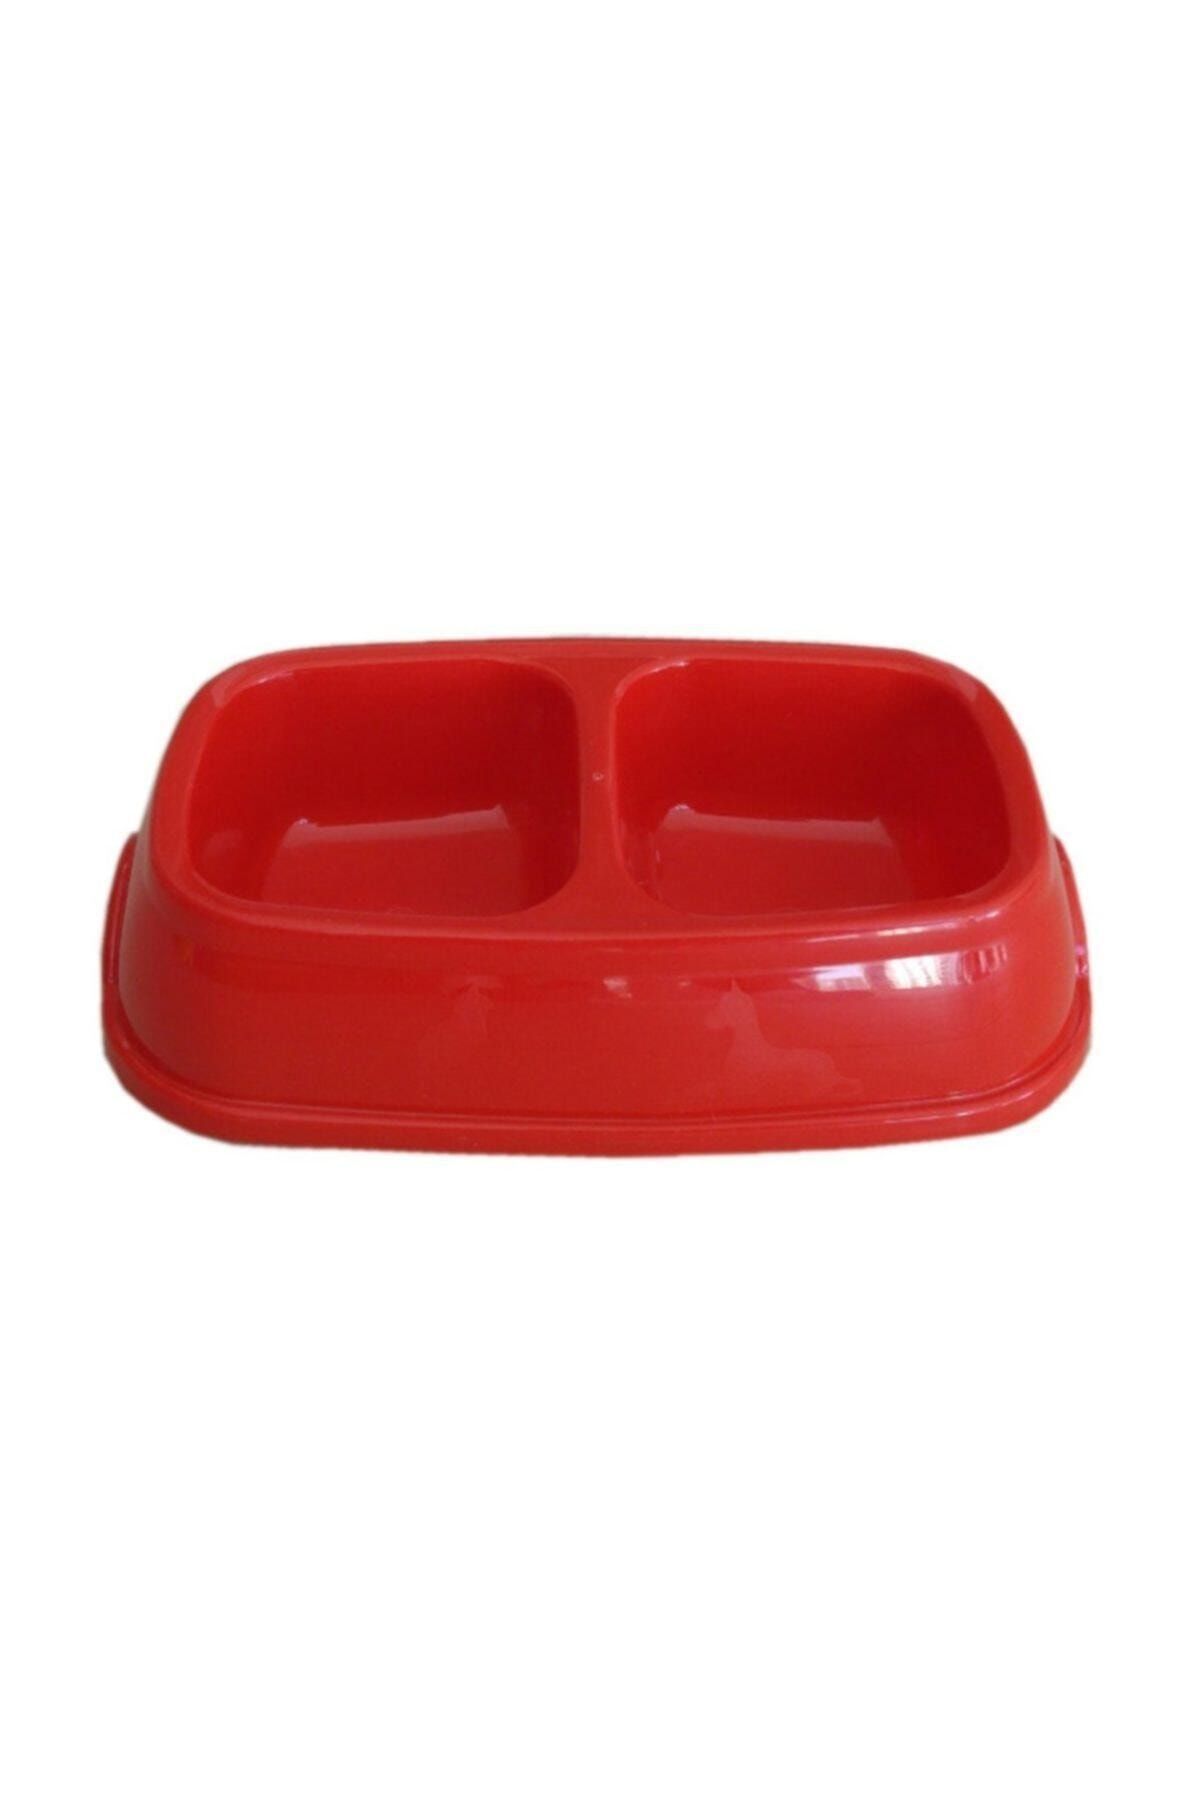 Flip Plastik Mama Kabı Ikili Duz Renkli Kırmızı 25 cm.